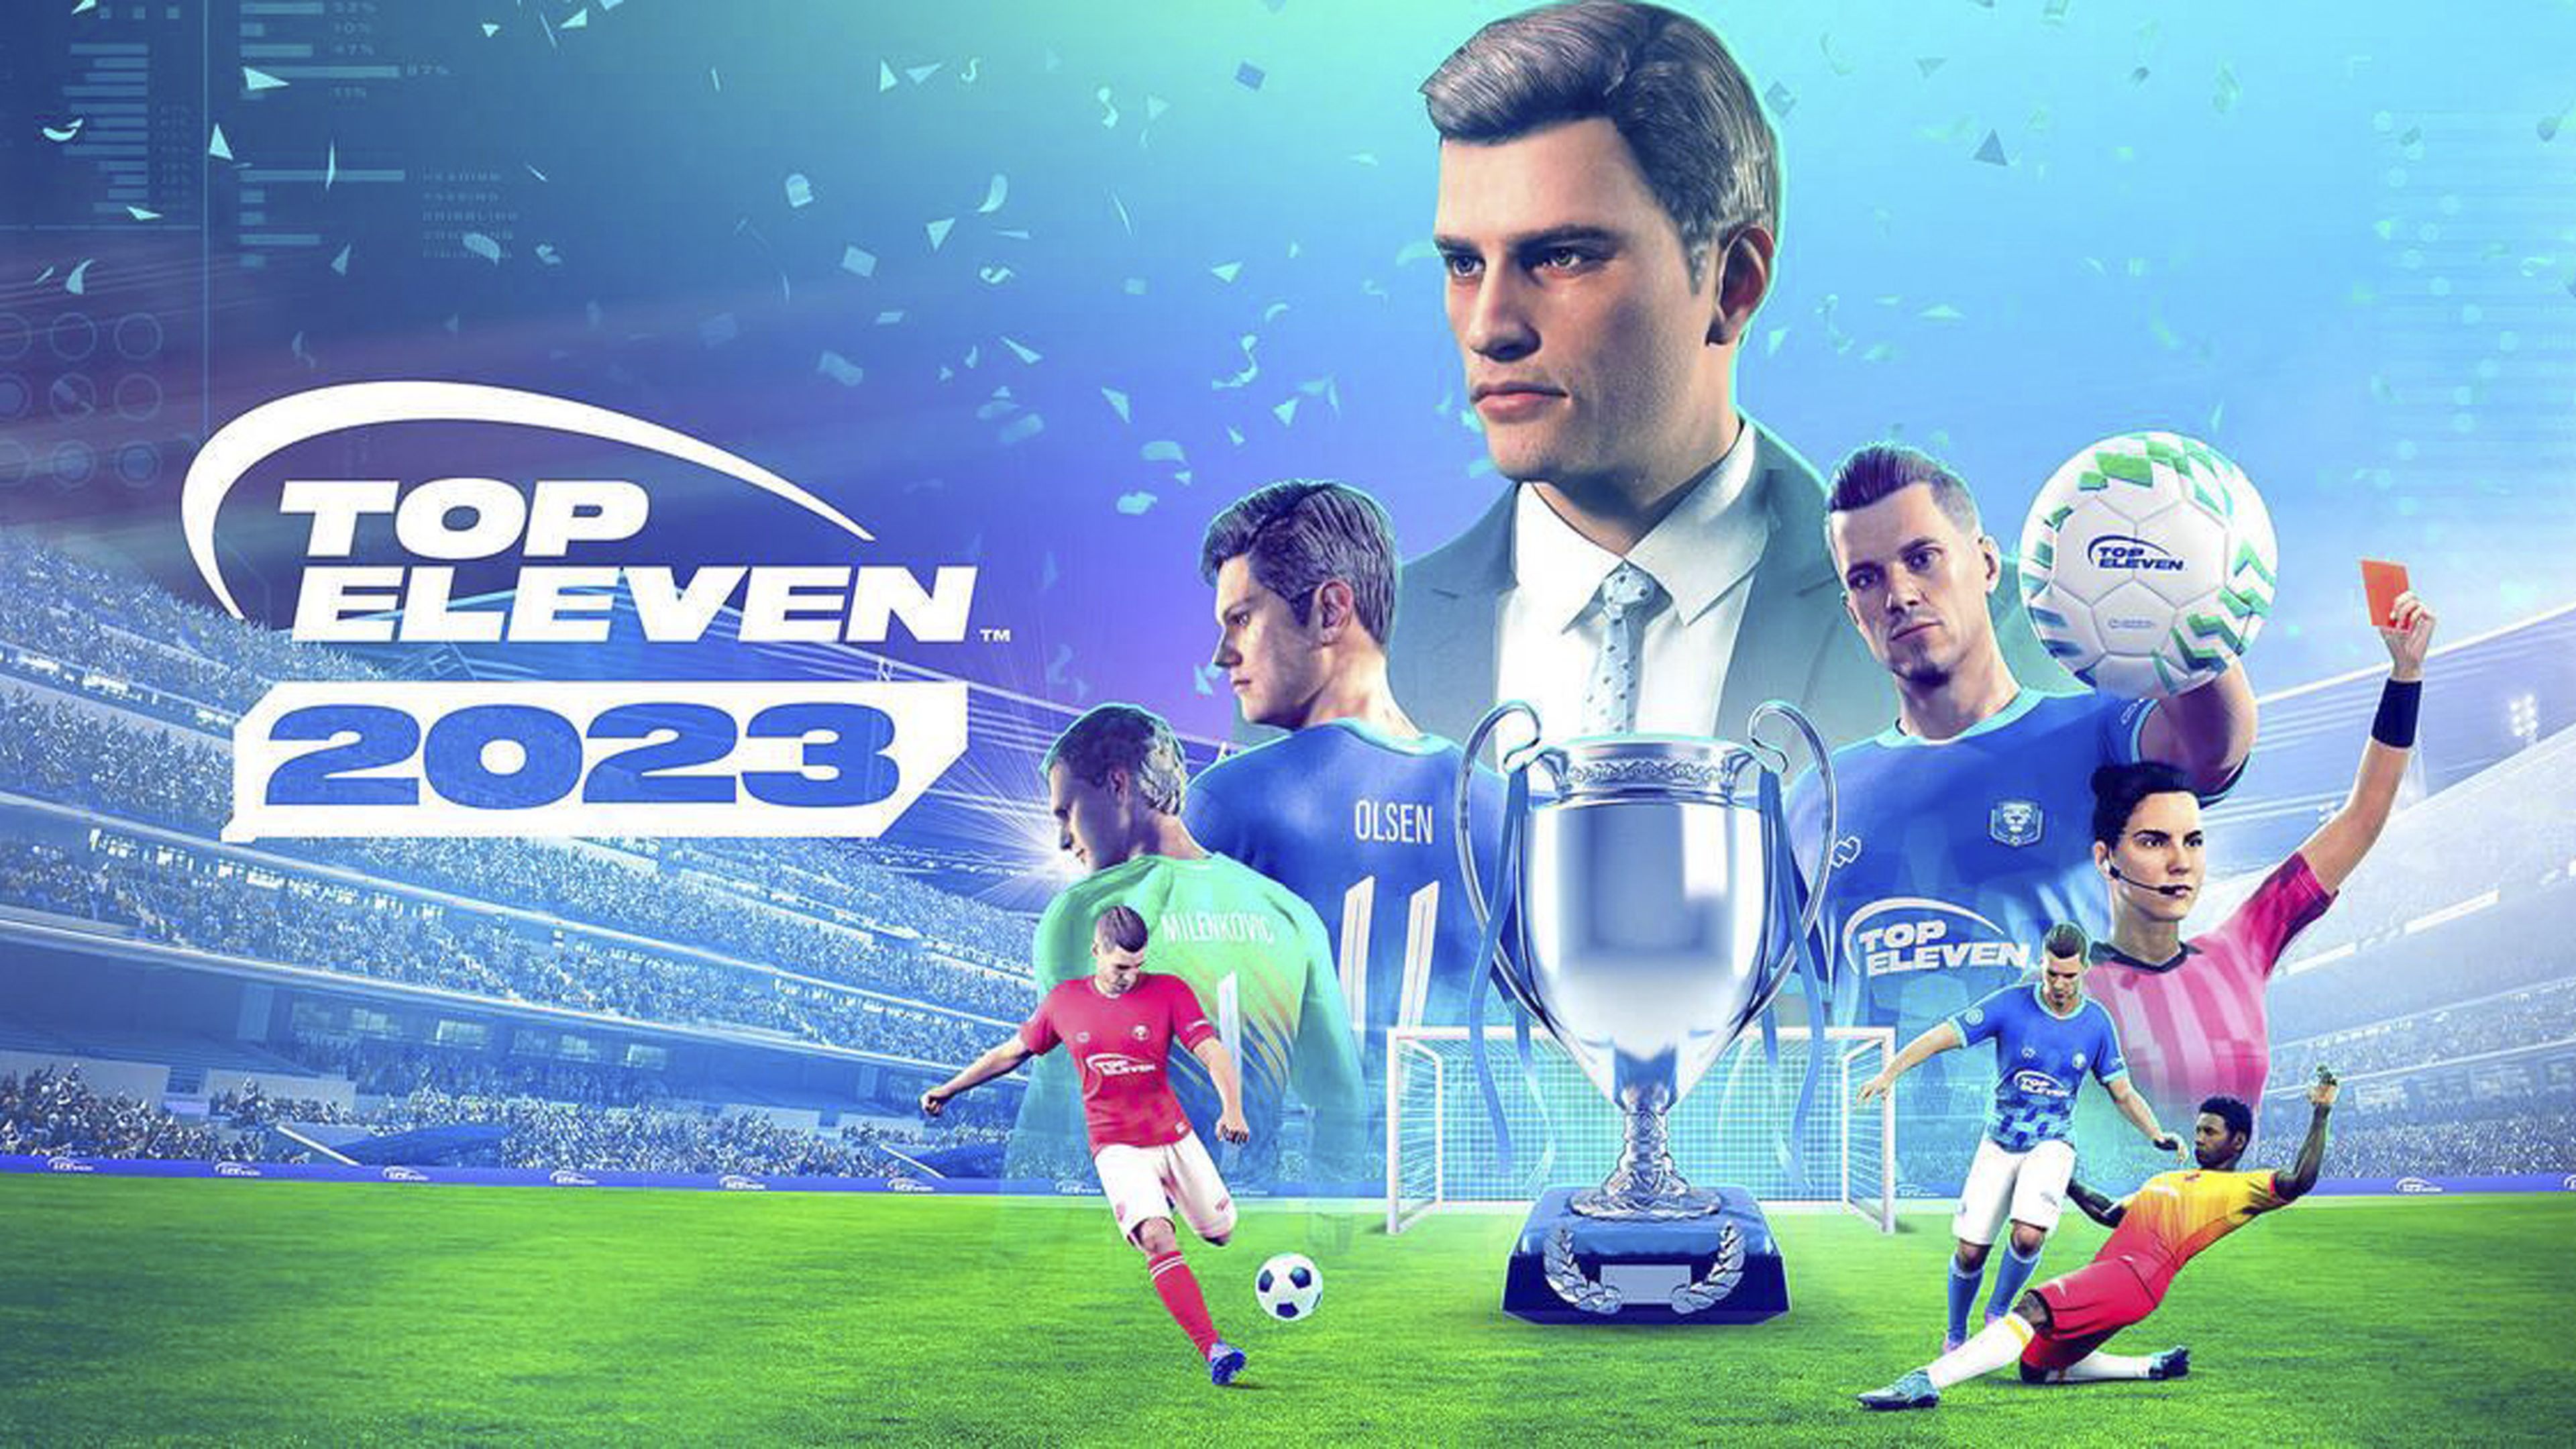 Top Eleven 2023: Mánager de Fútbol